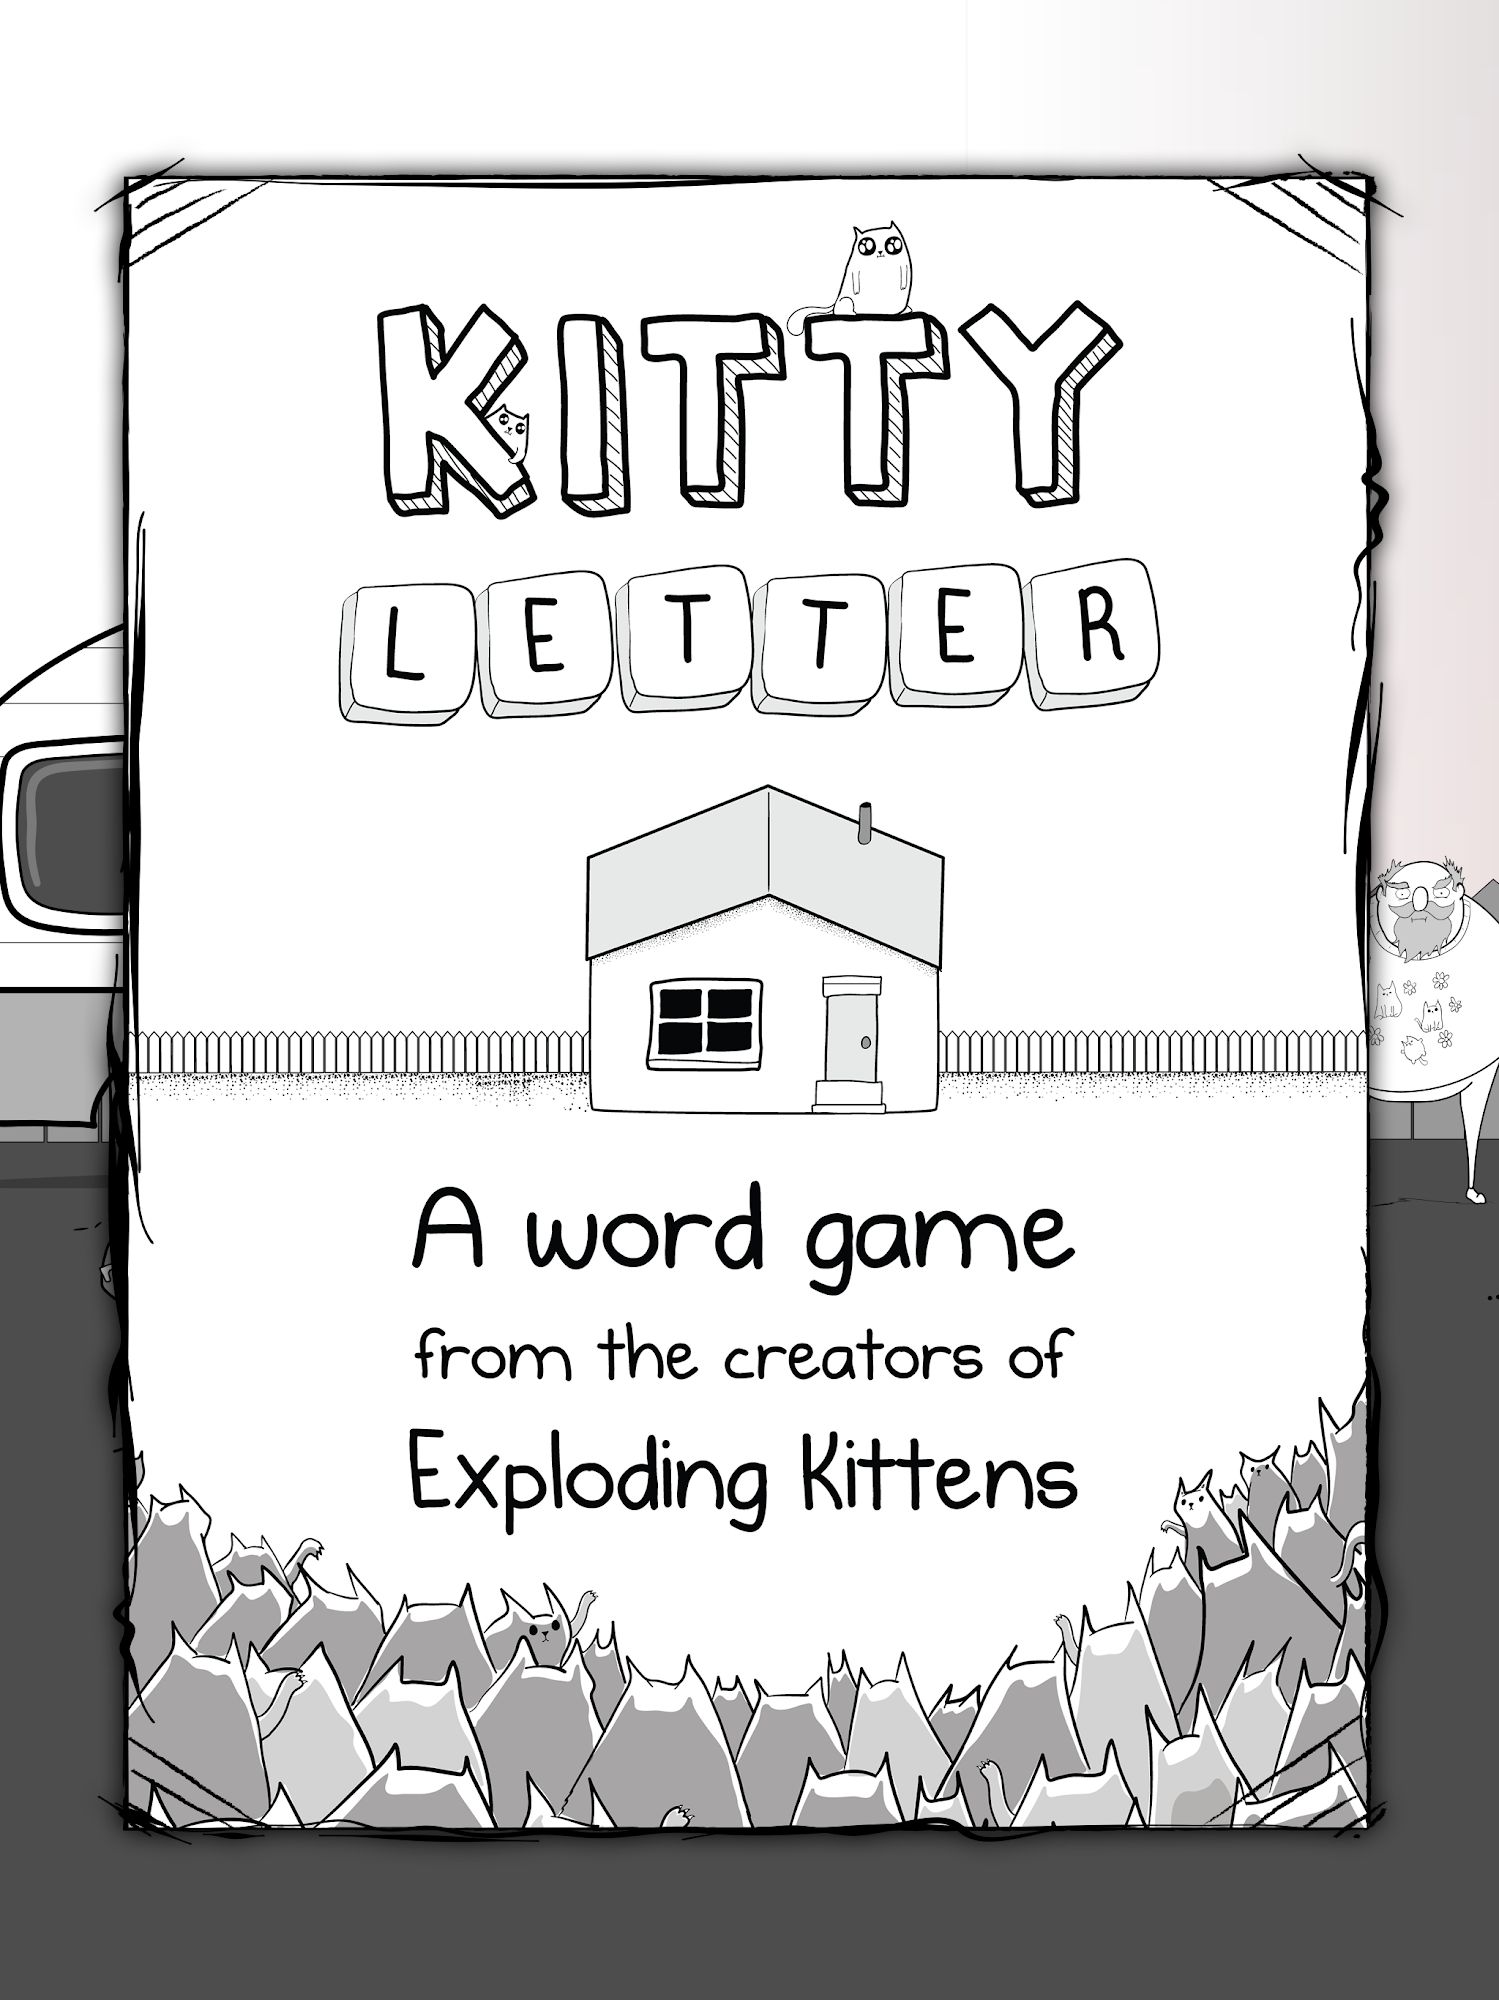 Descargar Kitty Letter gratis para Android.